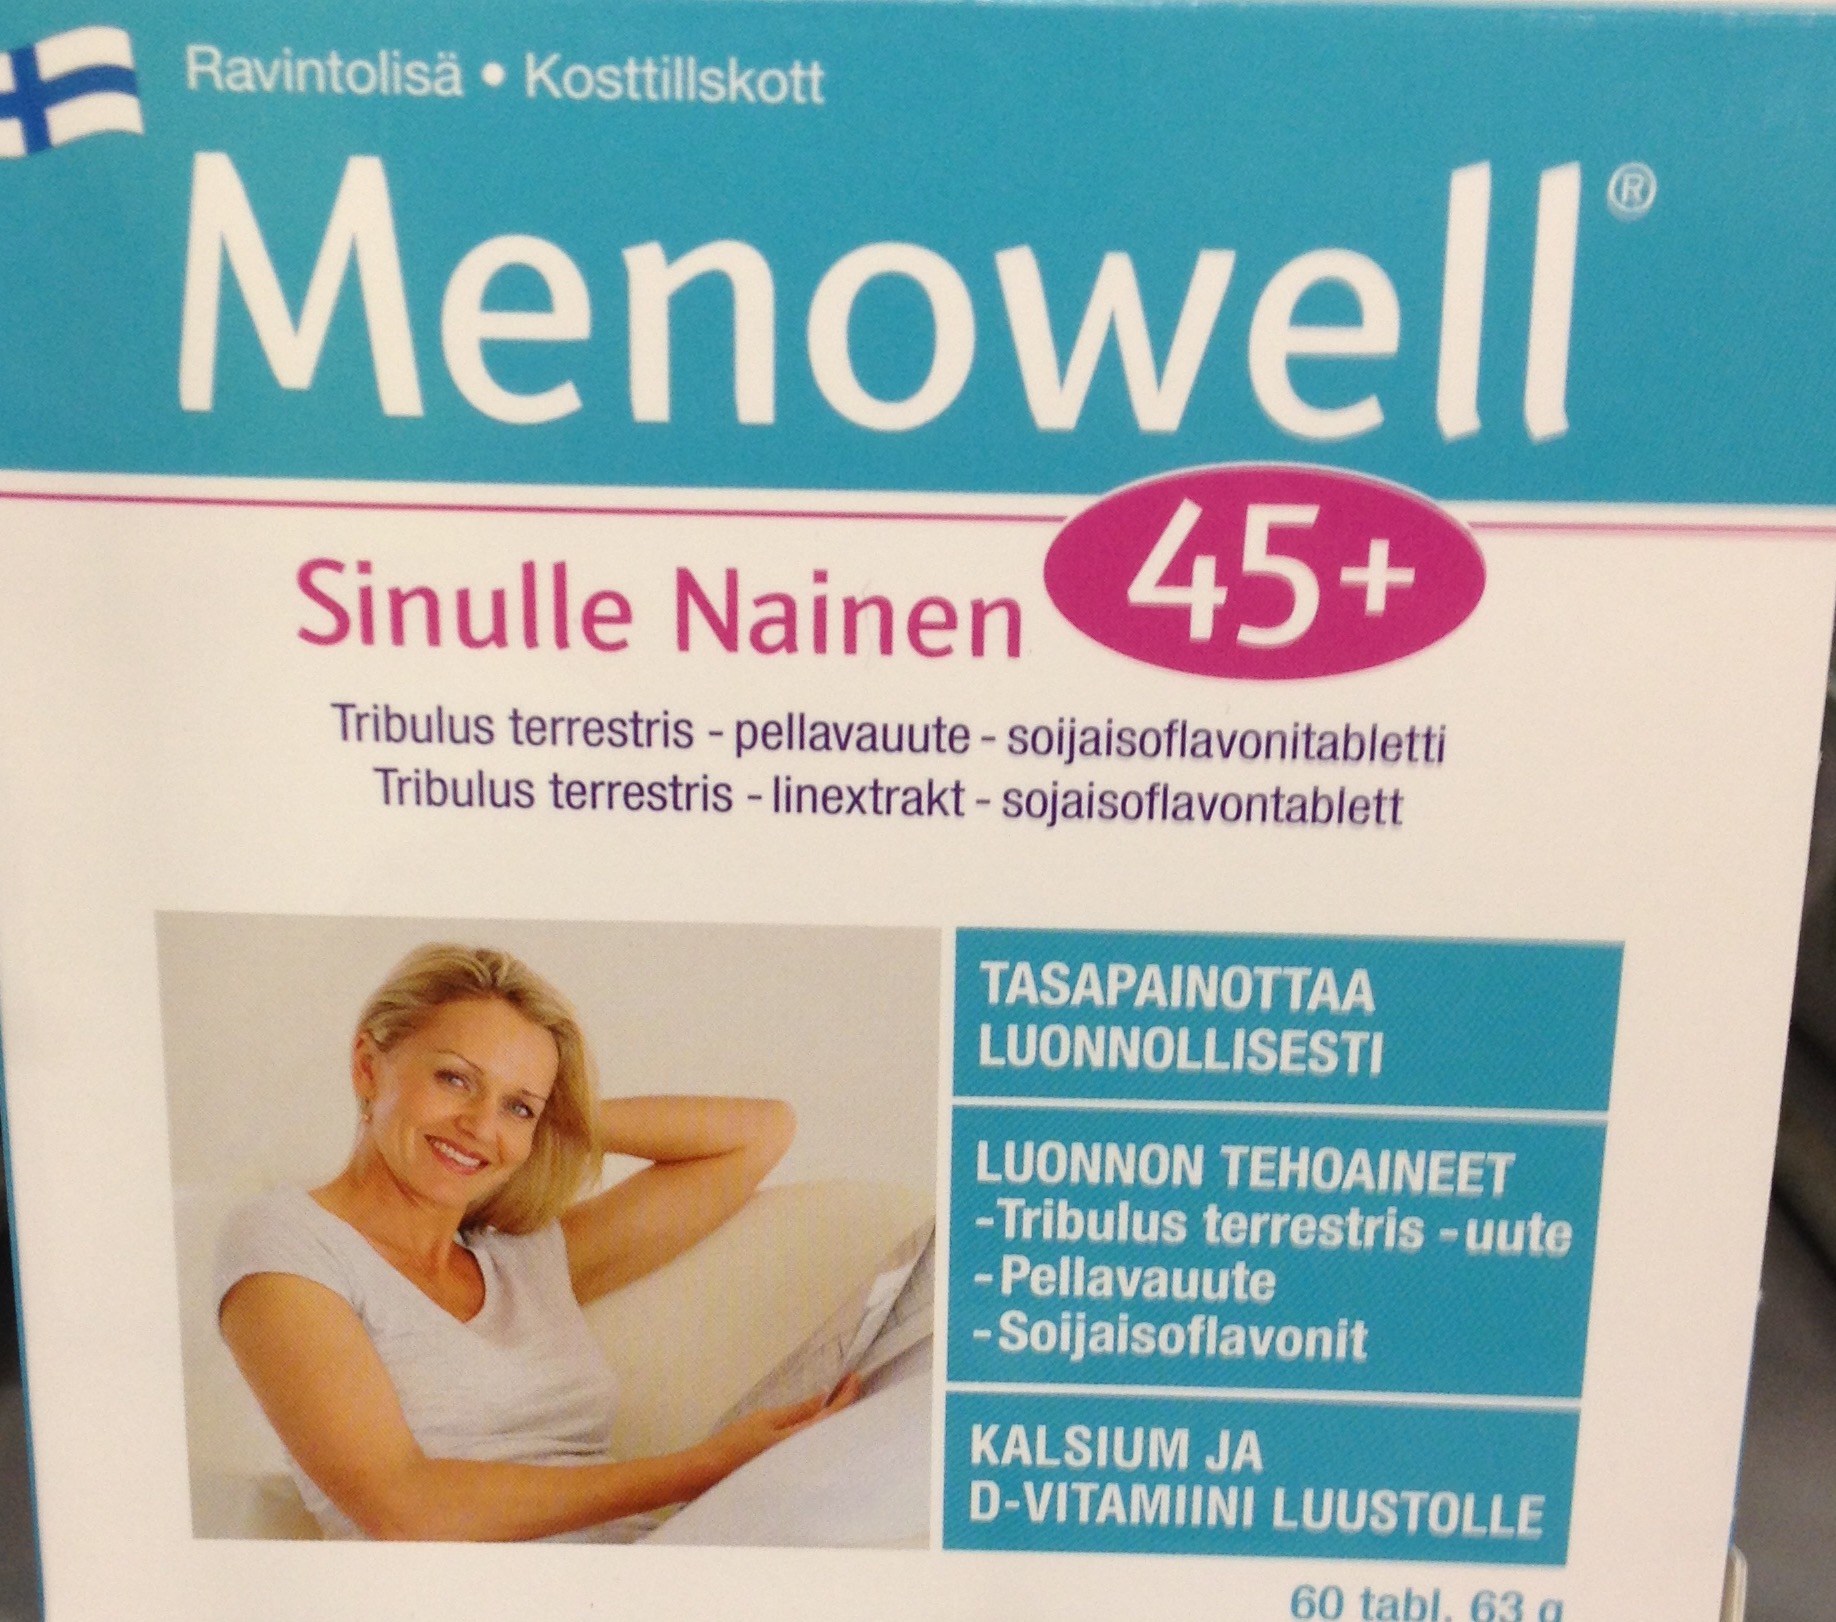 Витамин после менопаузы. Витамины Menowell 45+. Менопауза витамины menopause. Витамины из Финляндии 45+. Женские витамины финские.